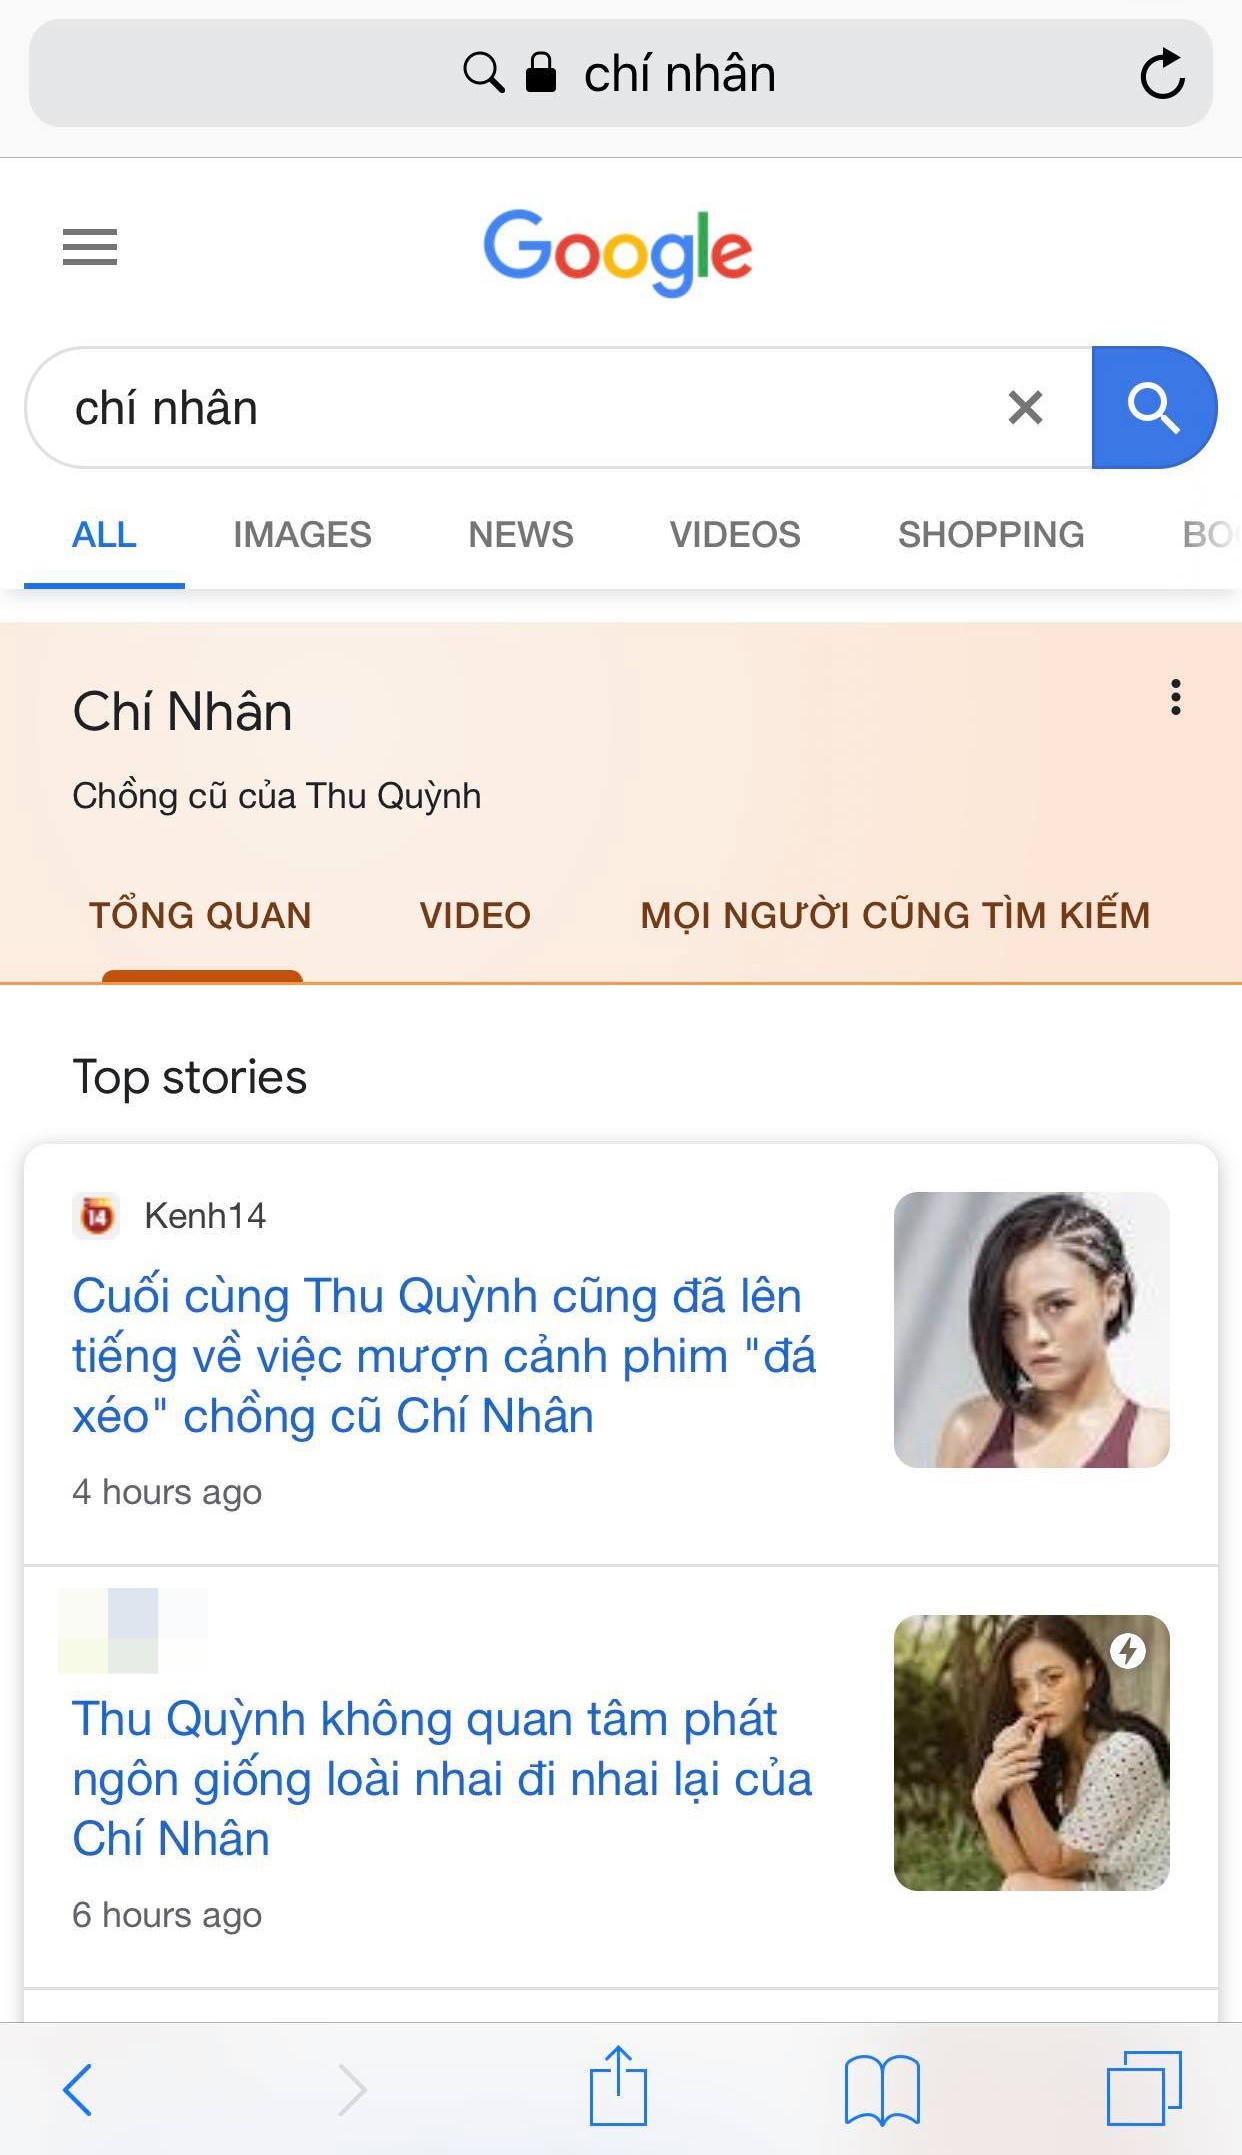 Hậu lùm xùm hôn nhân Google trả kết quả: Thu Quỳnh là diễn viên, Chí Nhân là chồng cũ Thu Quỳnh còn Minh Hà là nobody - Ảnh 2.